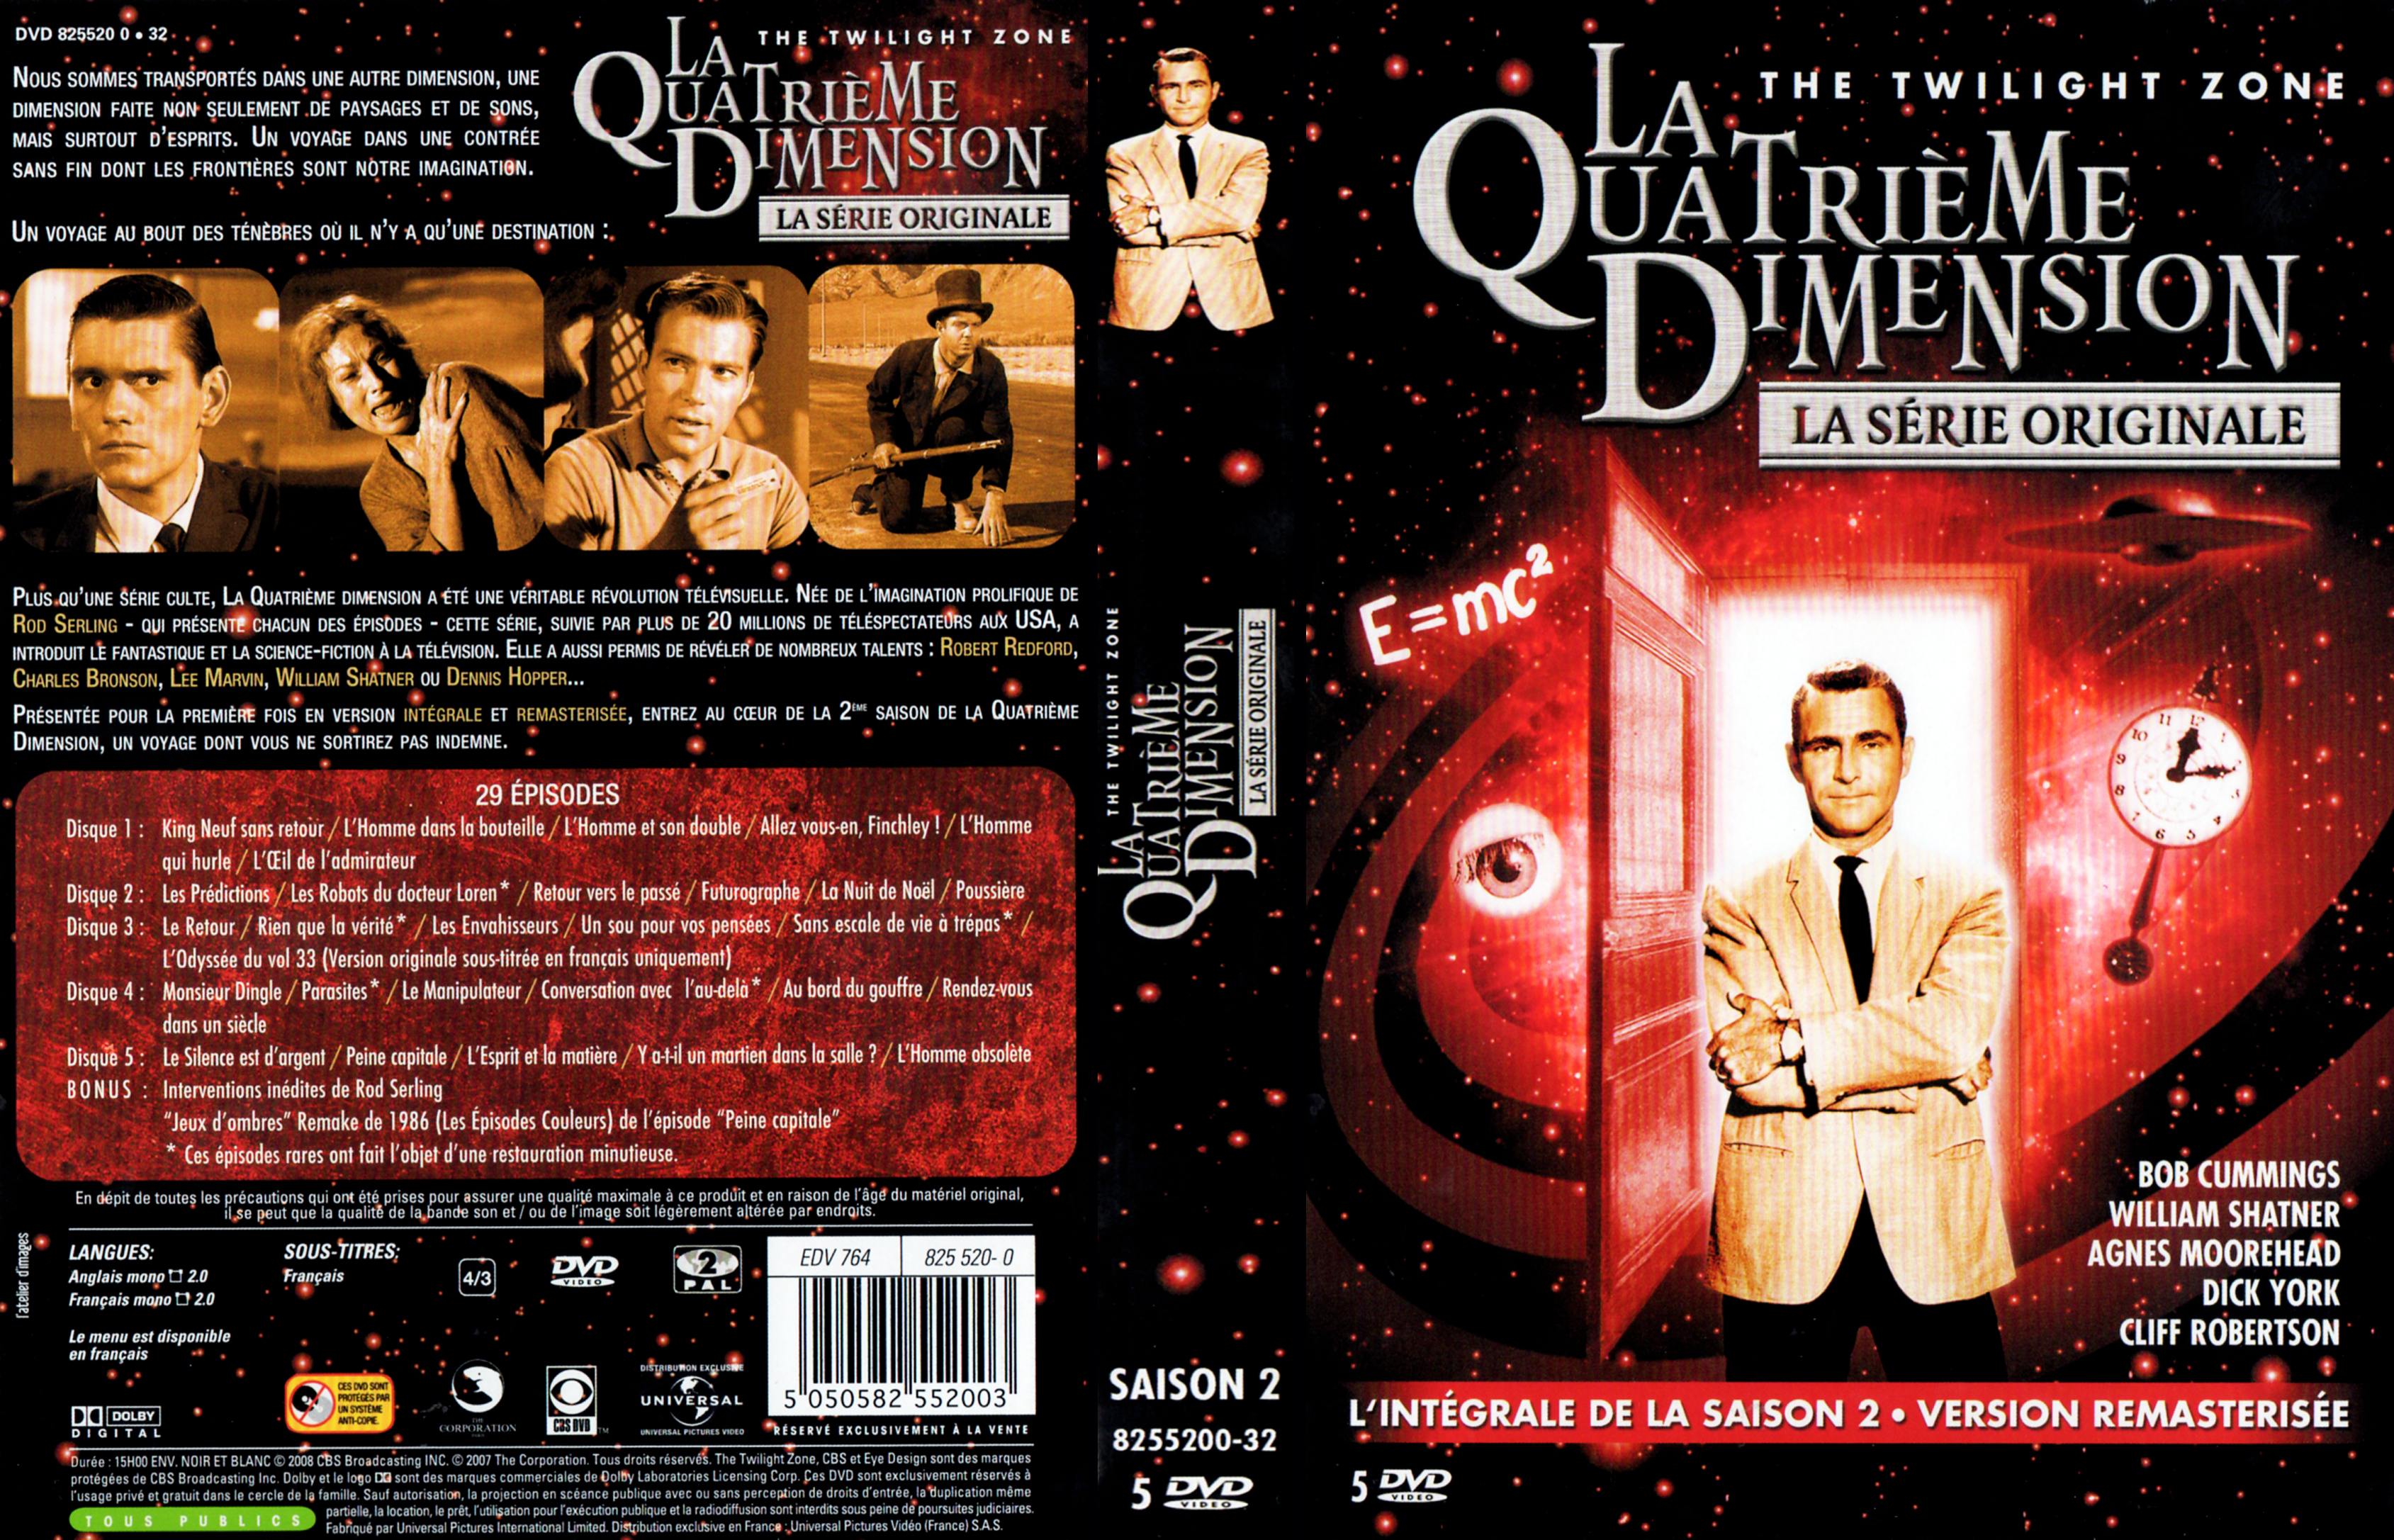 Jaquette DVD La quatrime dimension Saison 2 COFFRET